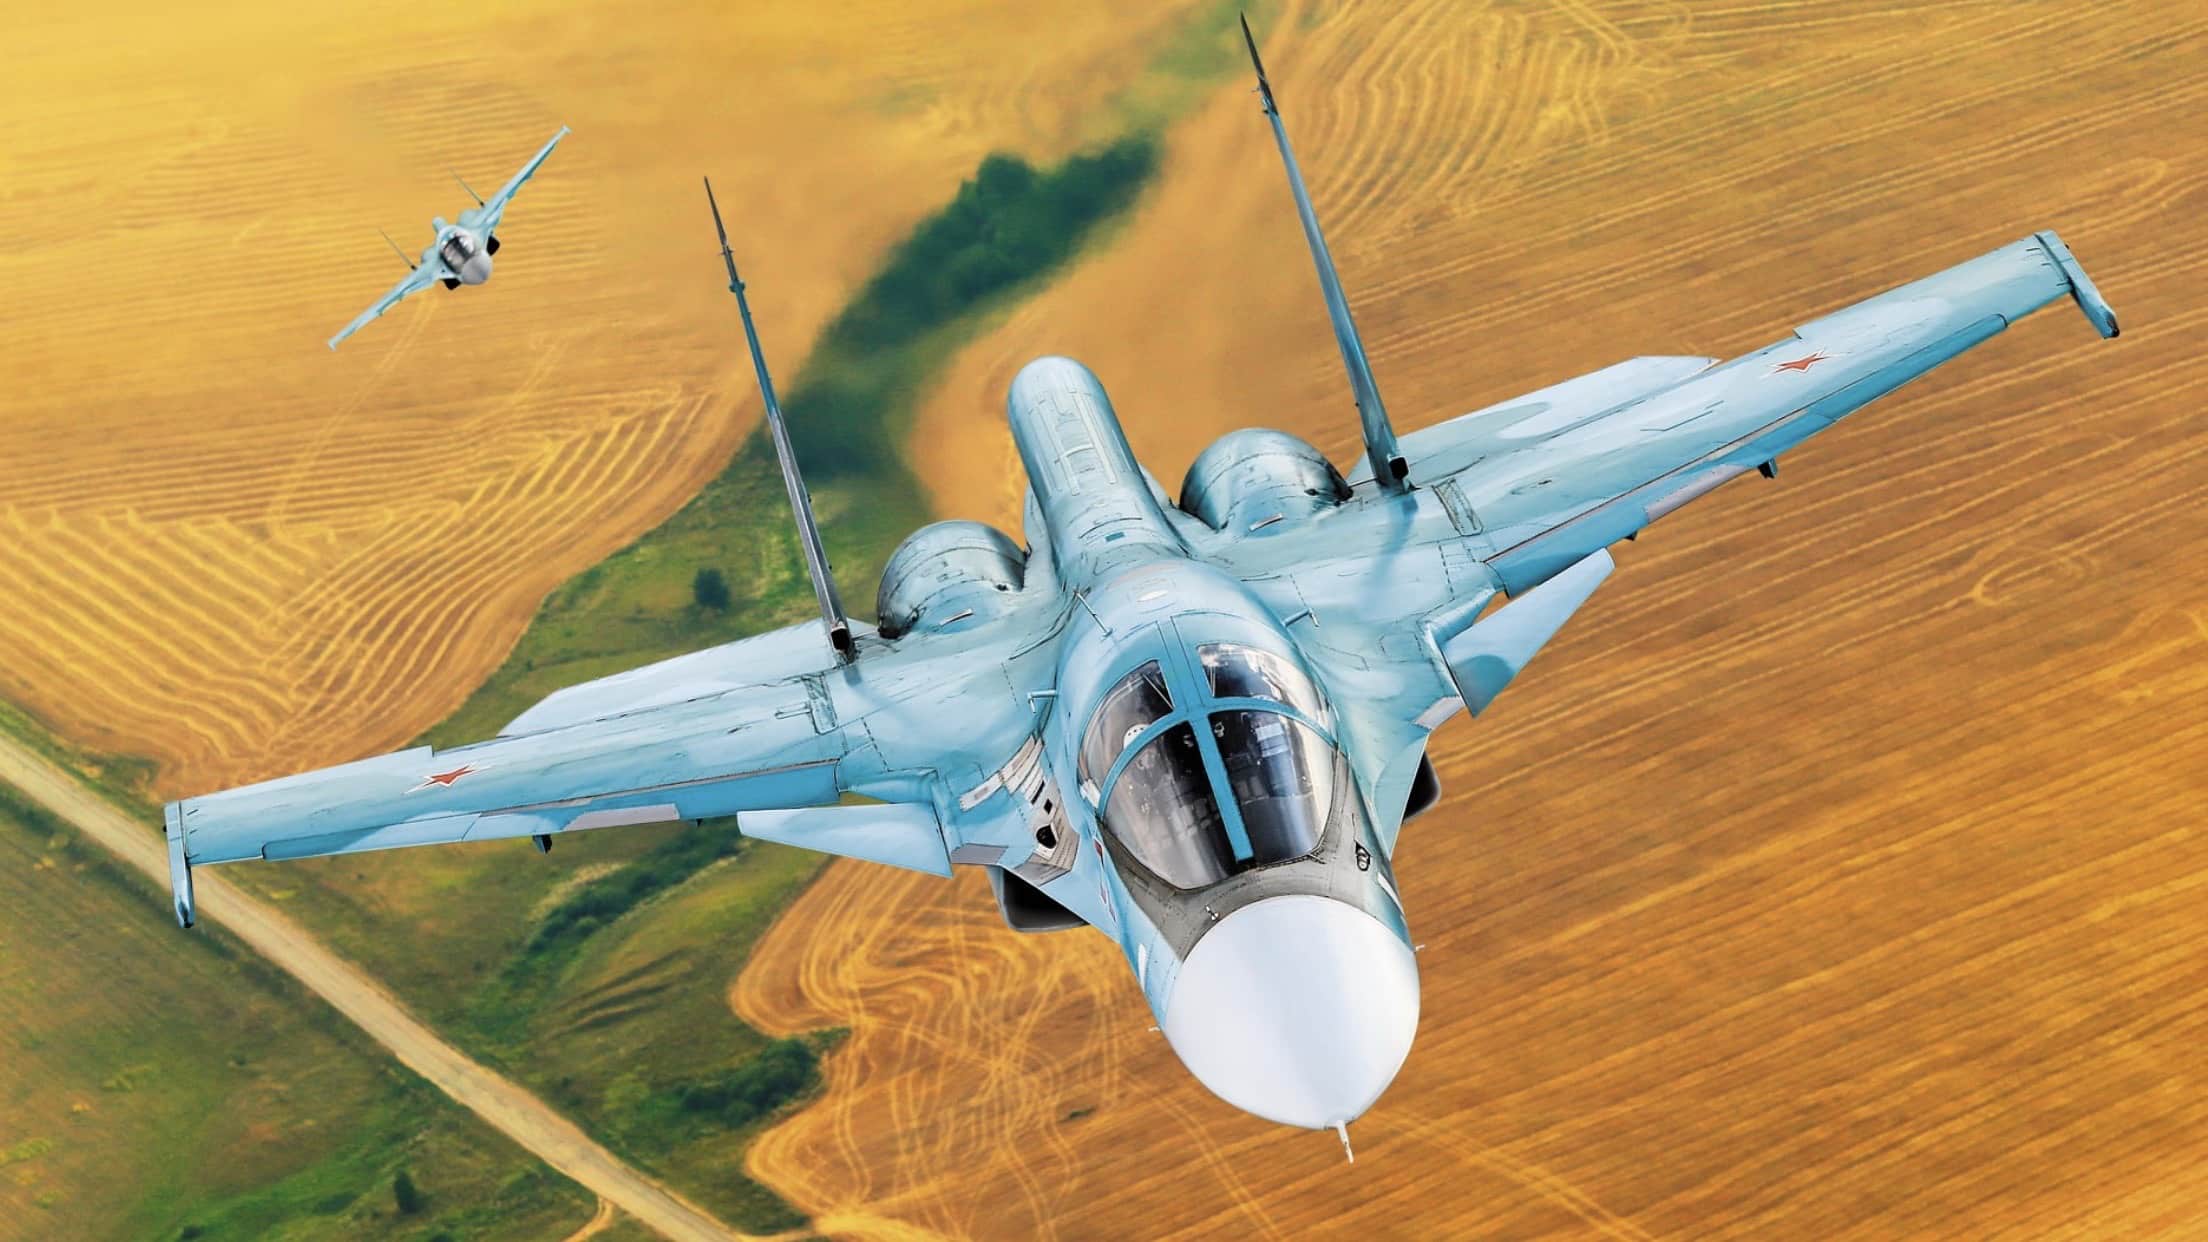 روسيا تحدث مجمع Khibiny في قاذفات Su-34 